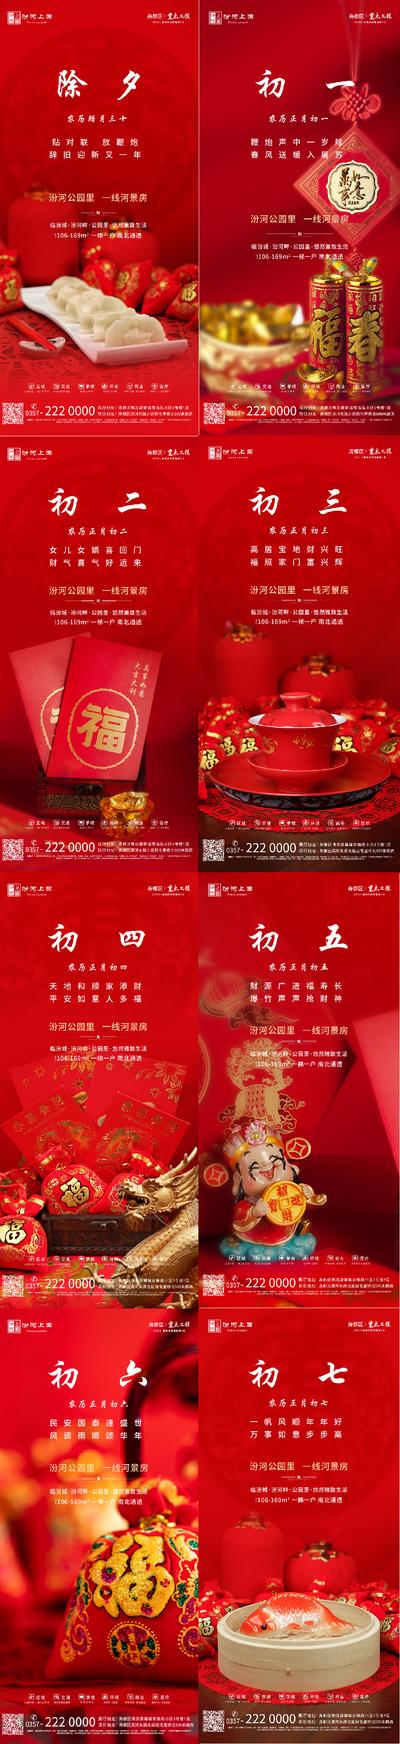 南门网 海报 中国传统节日 春节 拜年 除夕 初一 初七  年俗 喜庆 系列 